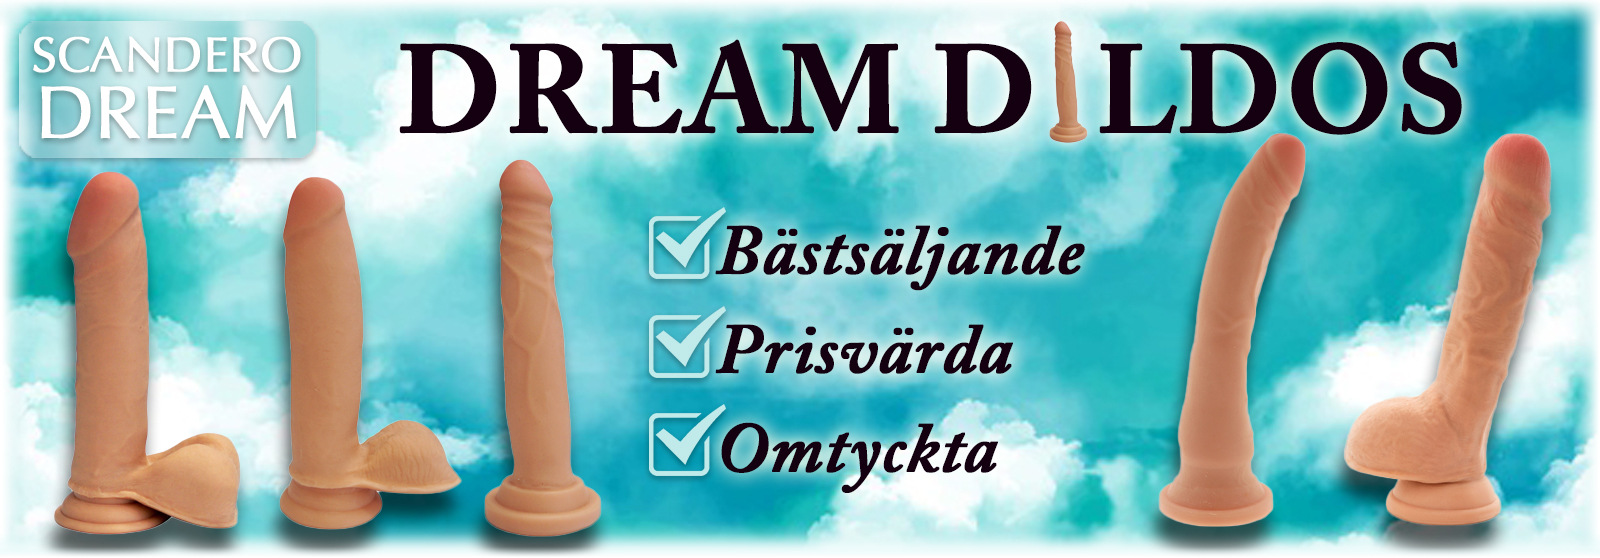 Dream Dildos